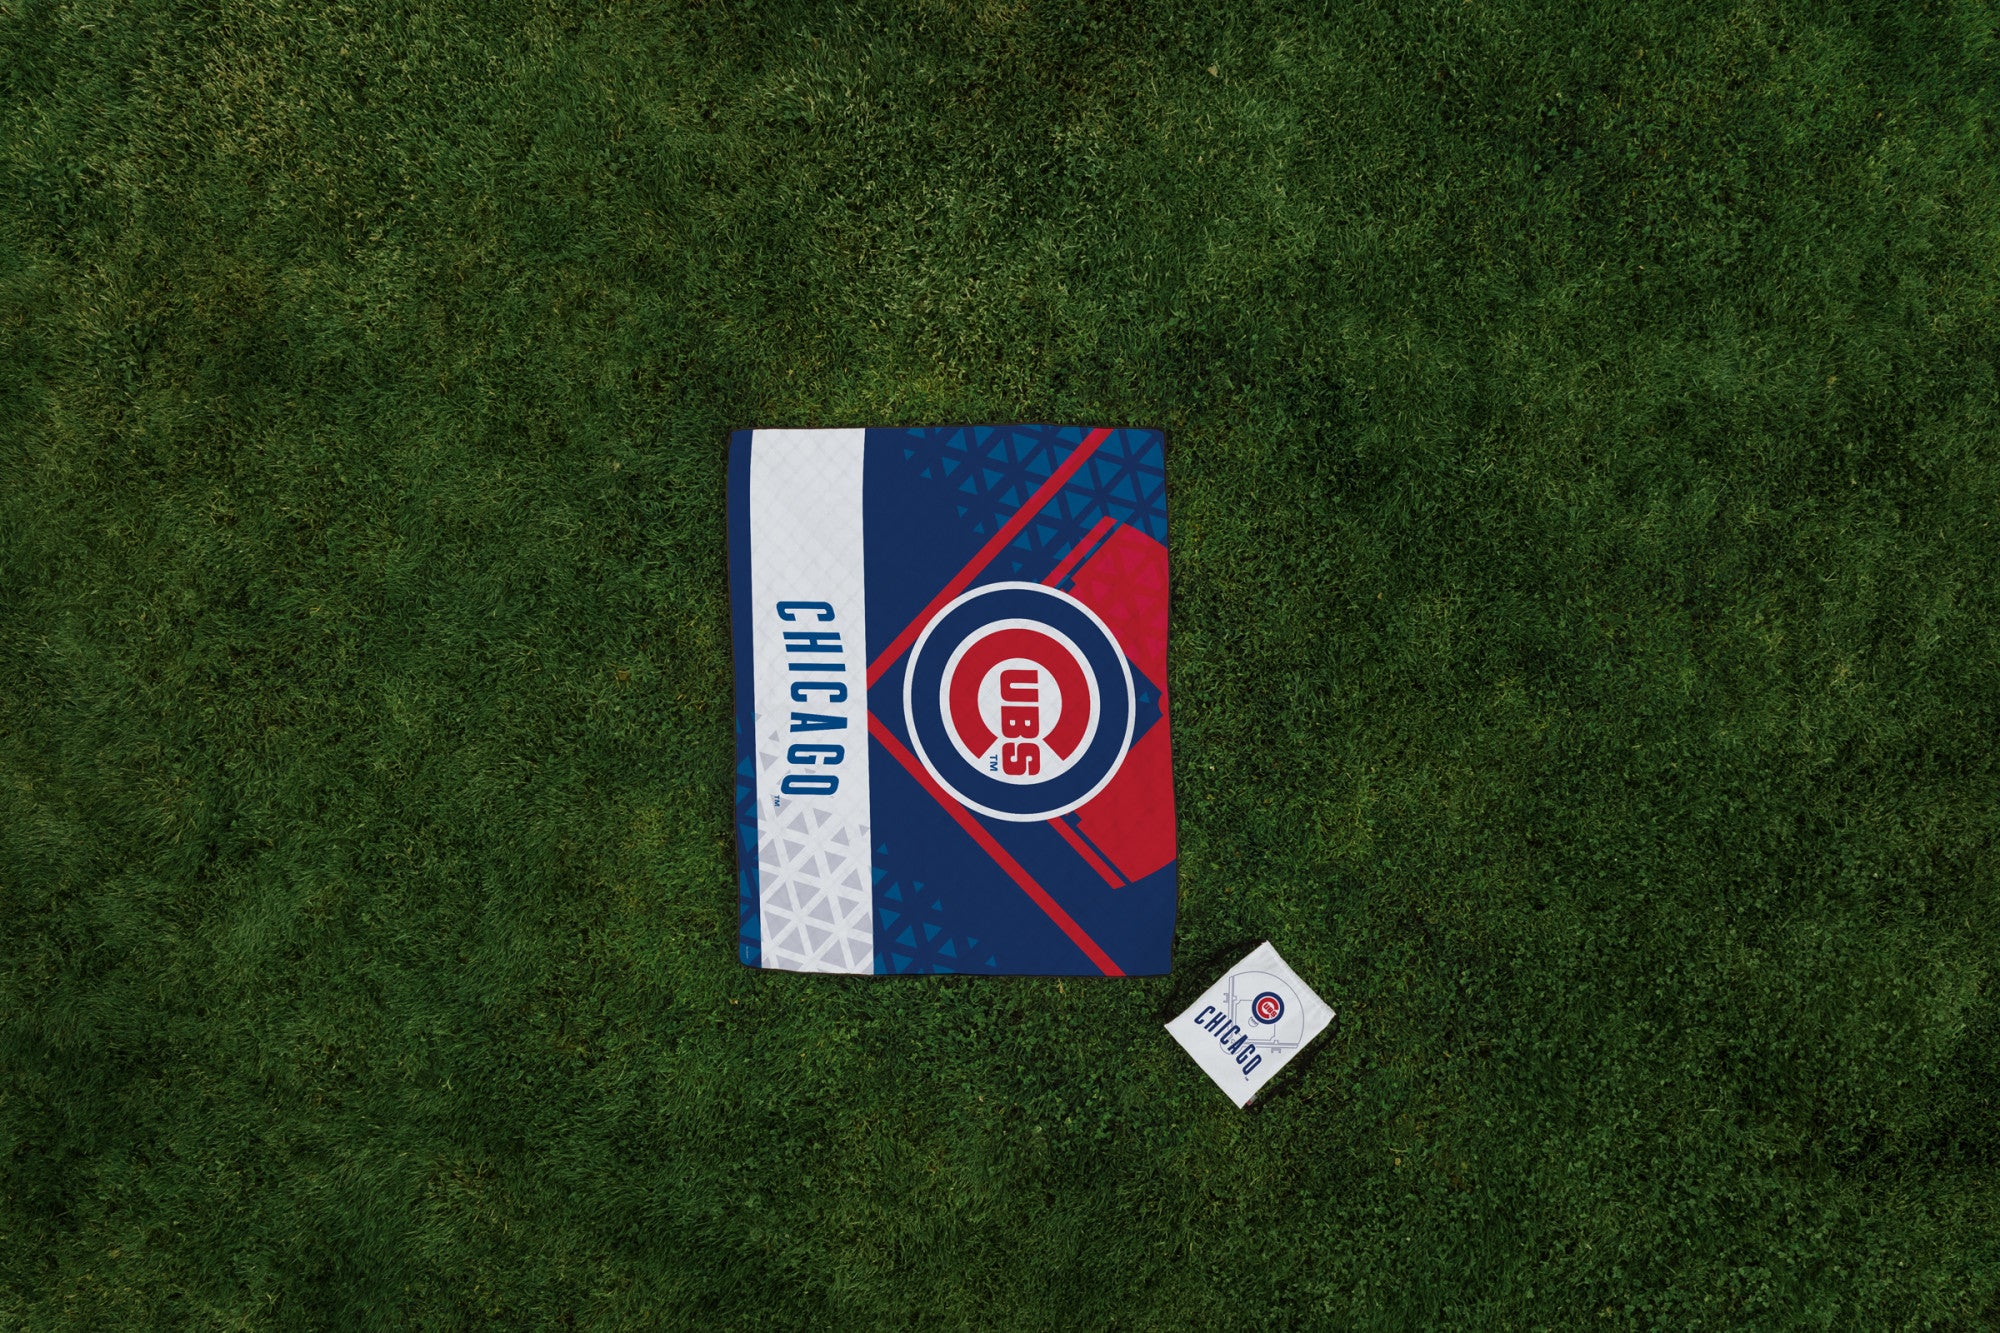 Chicago Cubs - Impresa Picnic Blanket